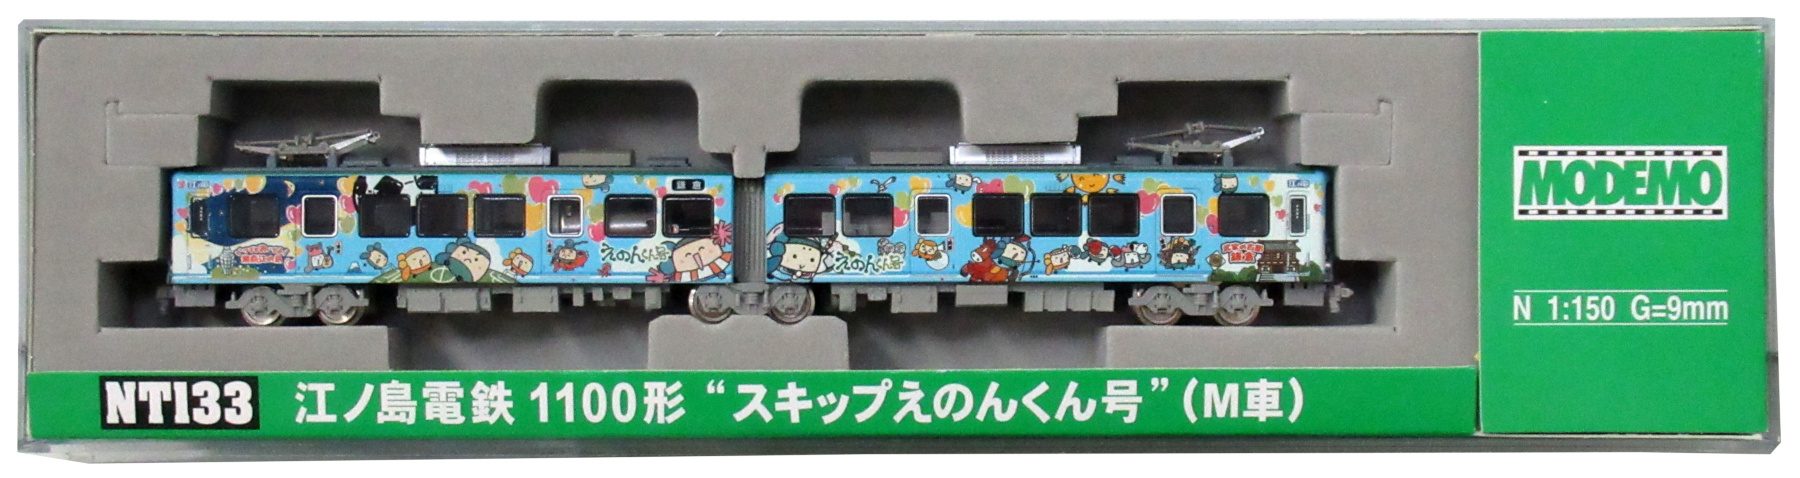 公式]鉄道模型(NT133江ノ島電鉄1100形 “スキップえのんくん号” (M車 